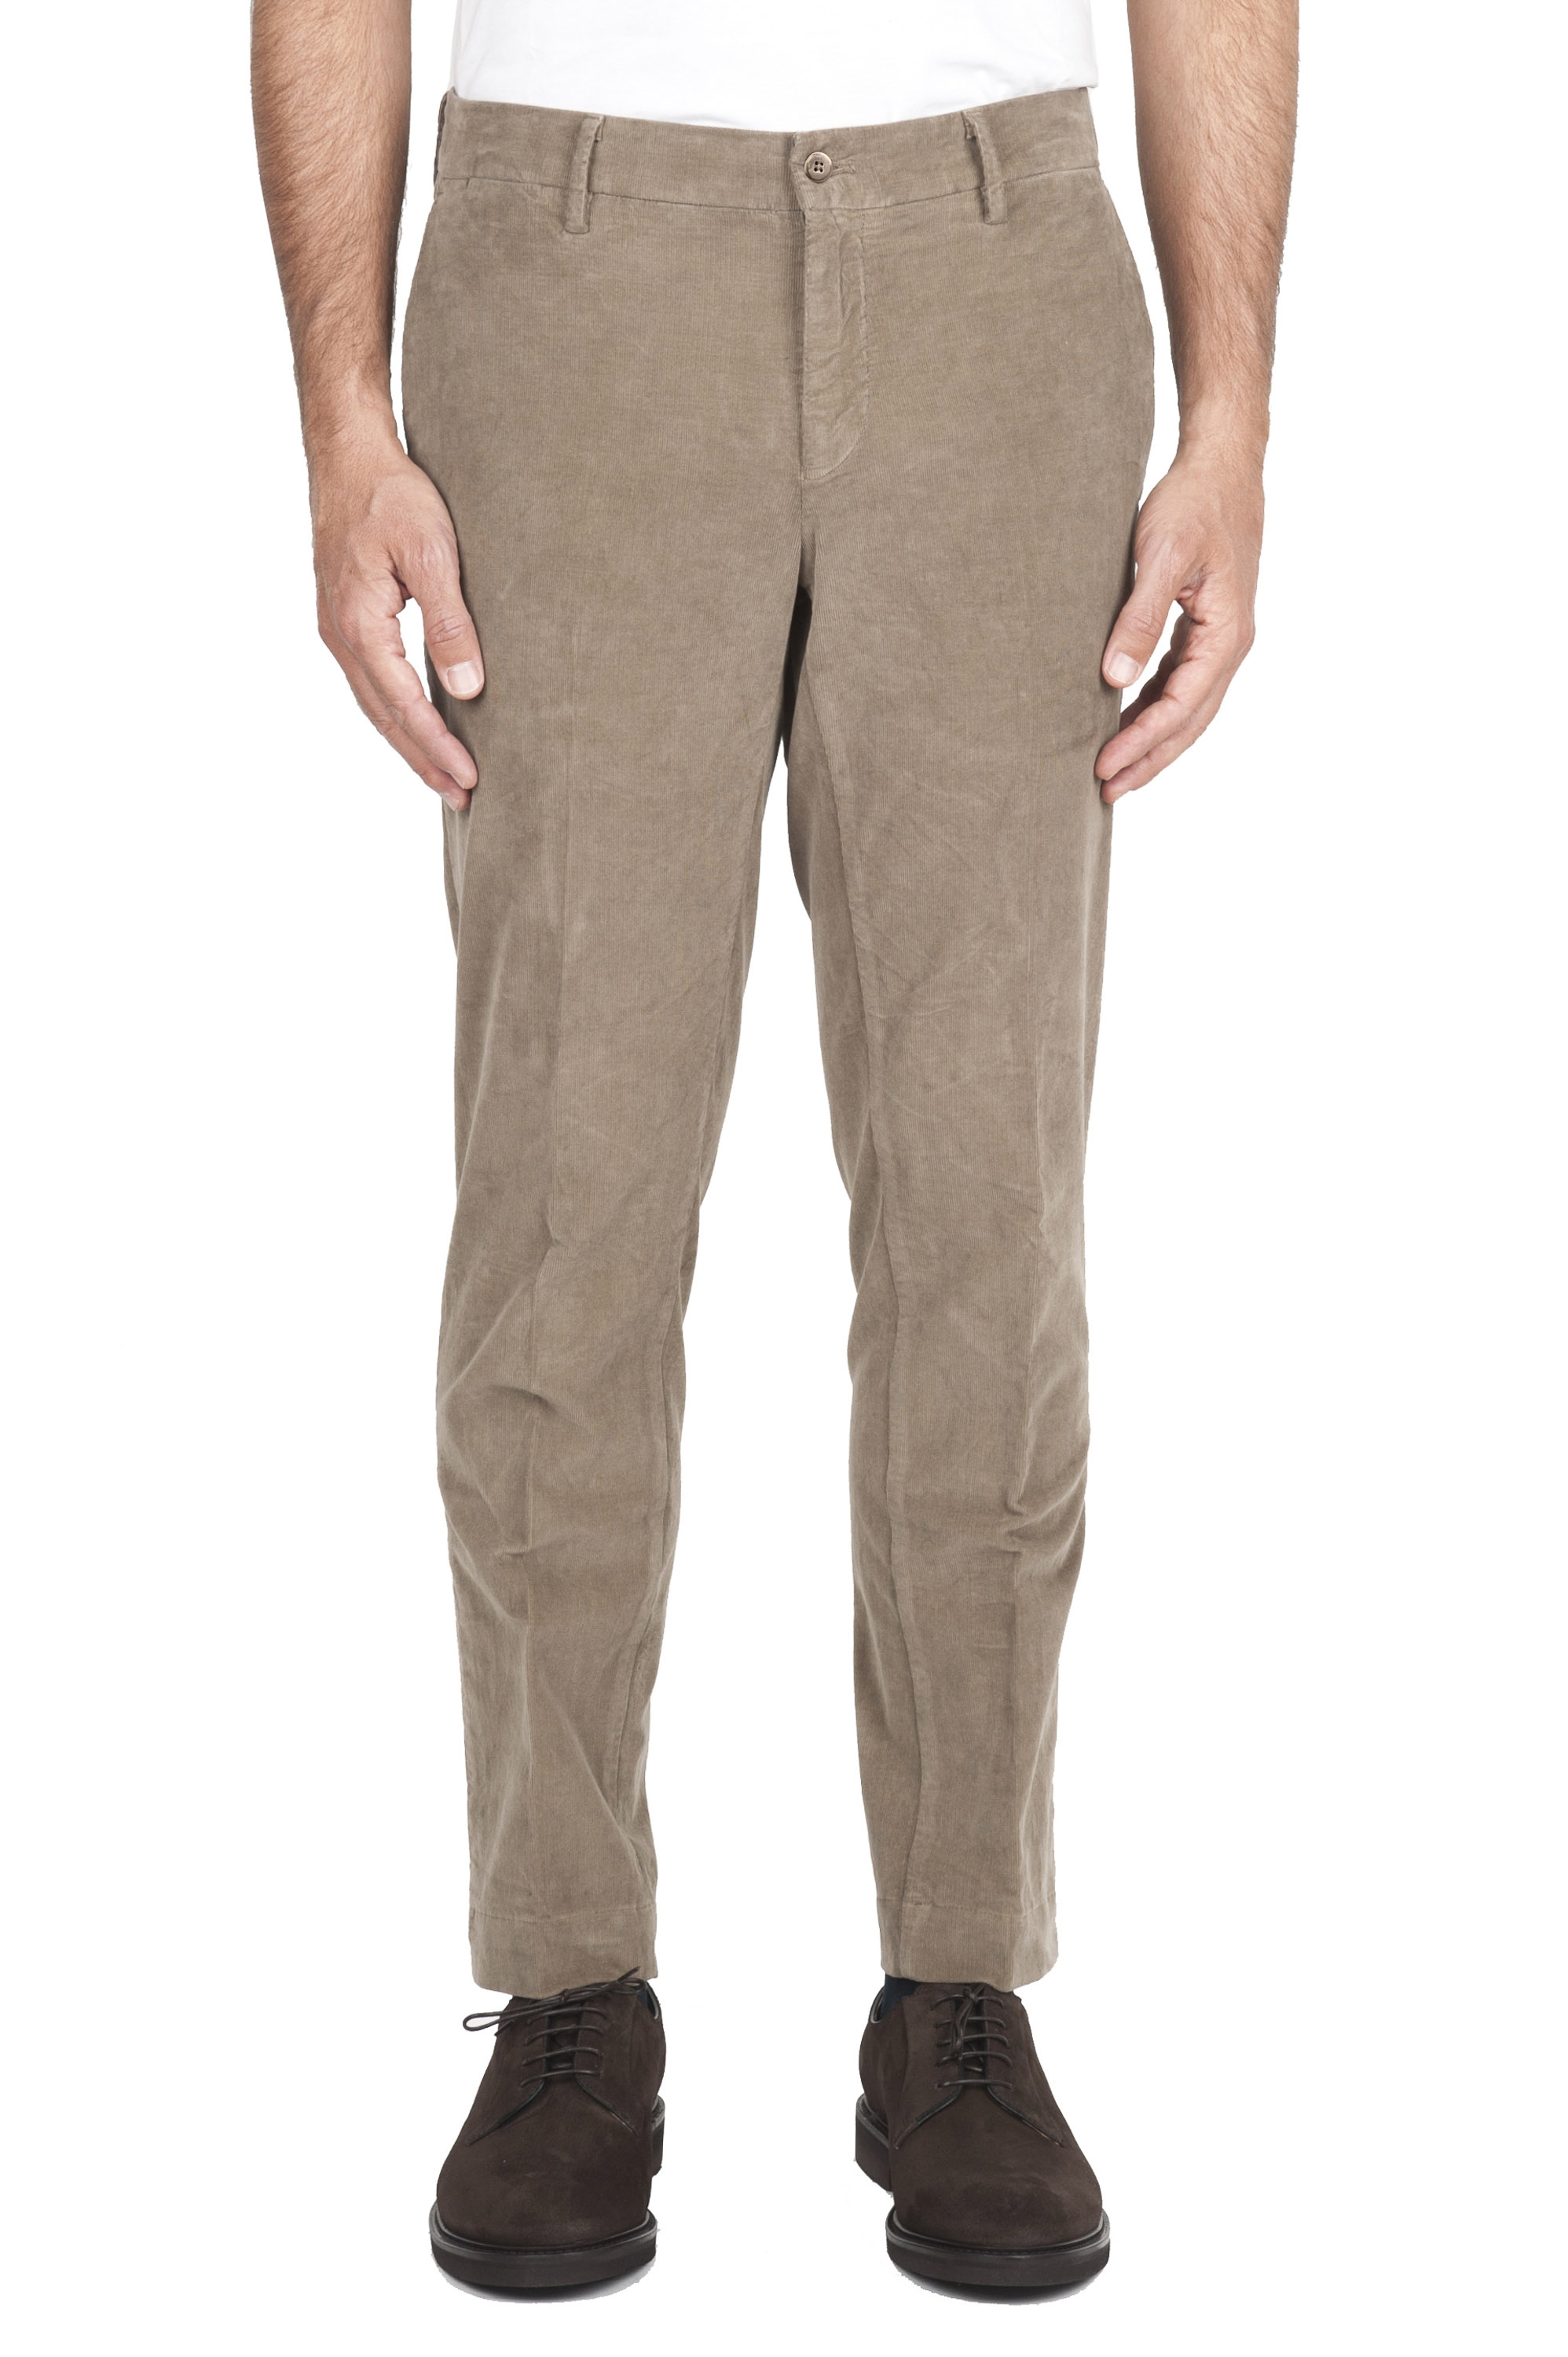 SBU 02930_2020AW Pantalones chinos clásicos en algodón elástico beige 01